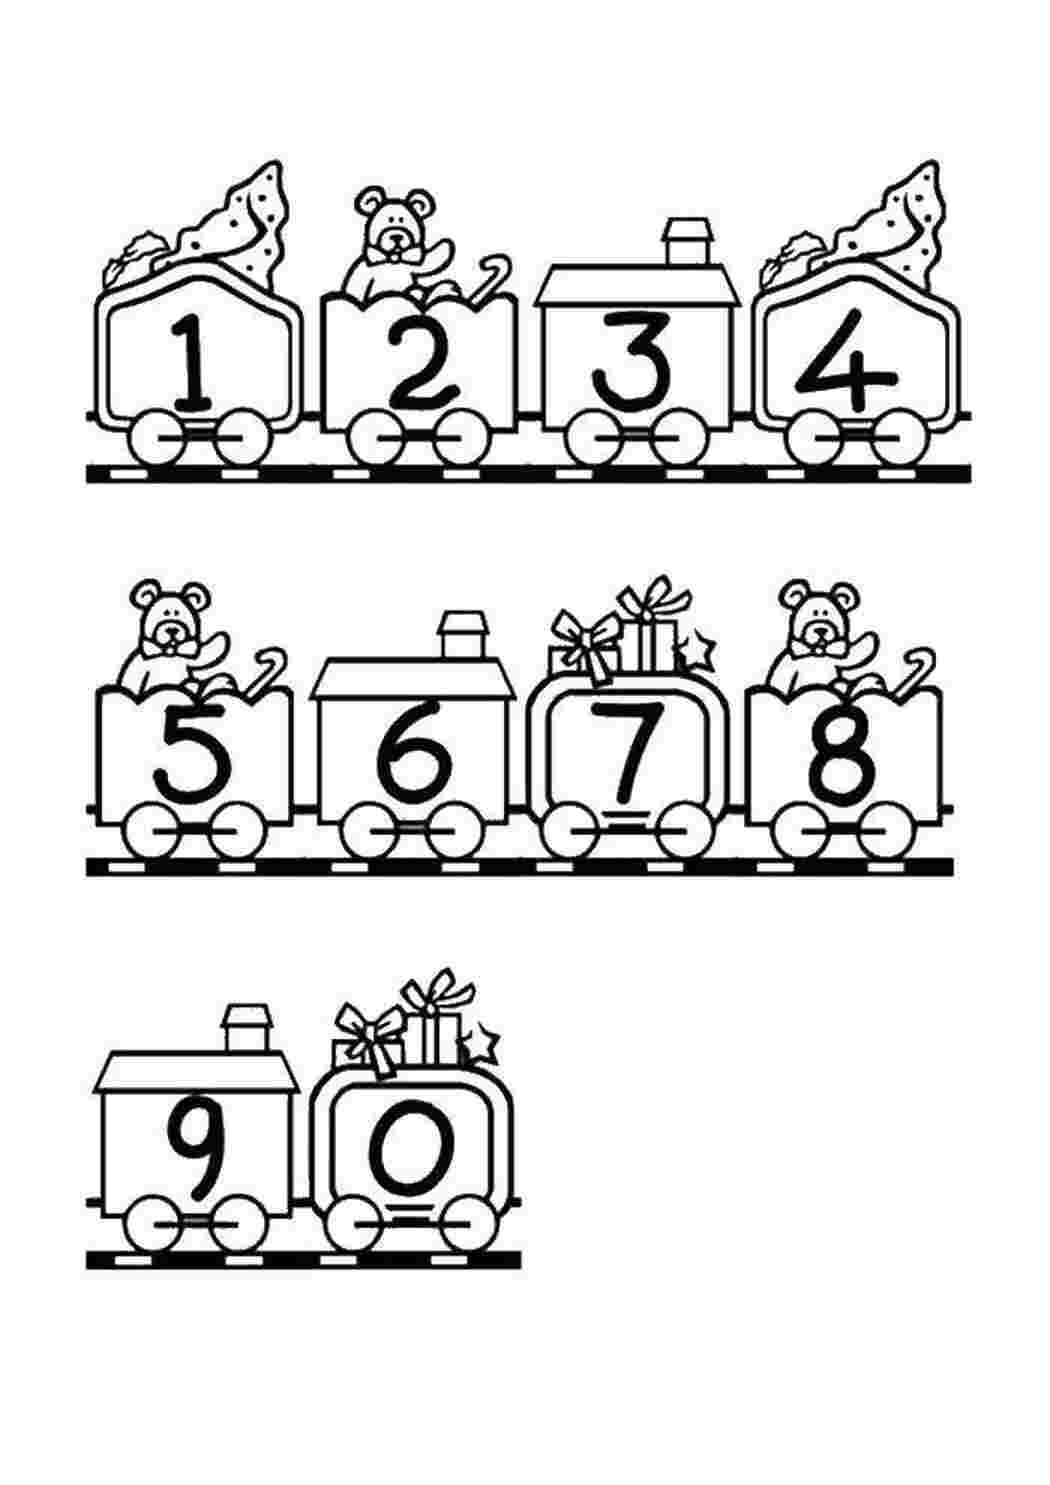 Паровоз цифр. Раскраски. Паровоз. Раскраска для детей поезд с вагончиками. Паровозик с цифрами для детей. Паровоз раскраска для детей.